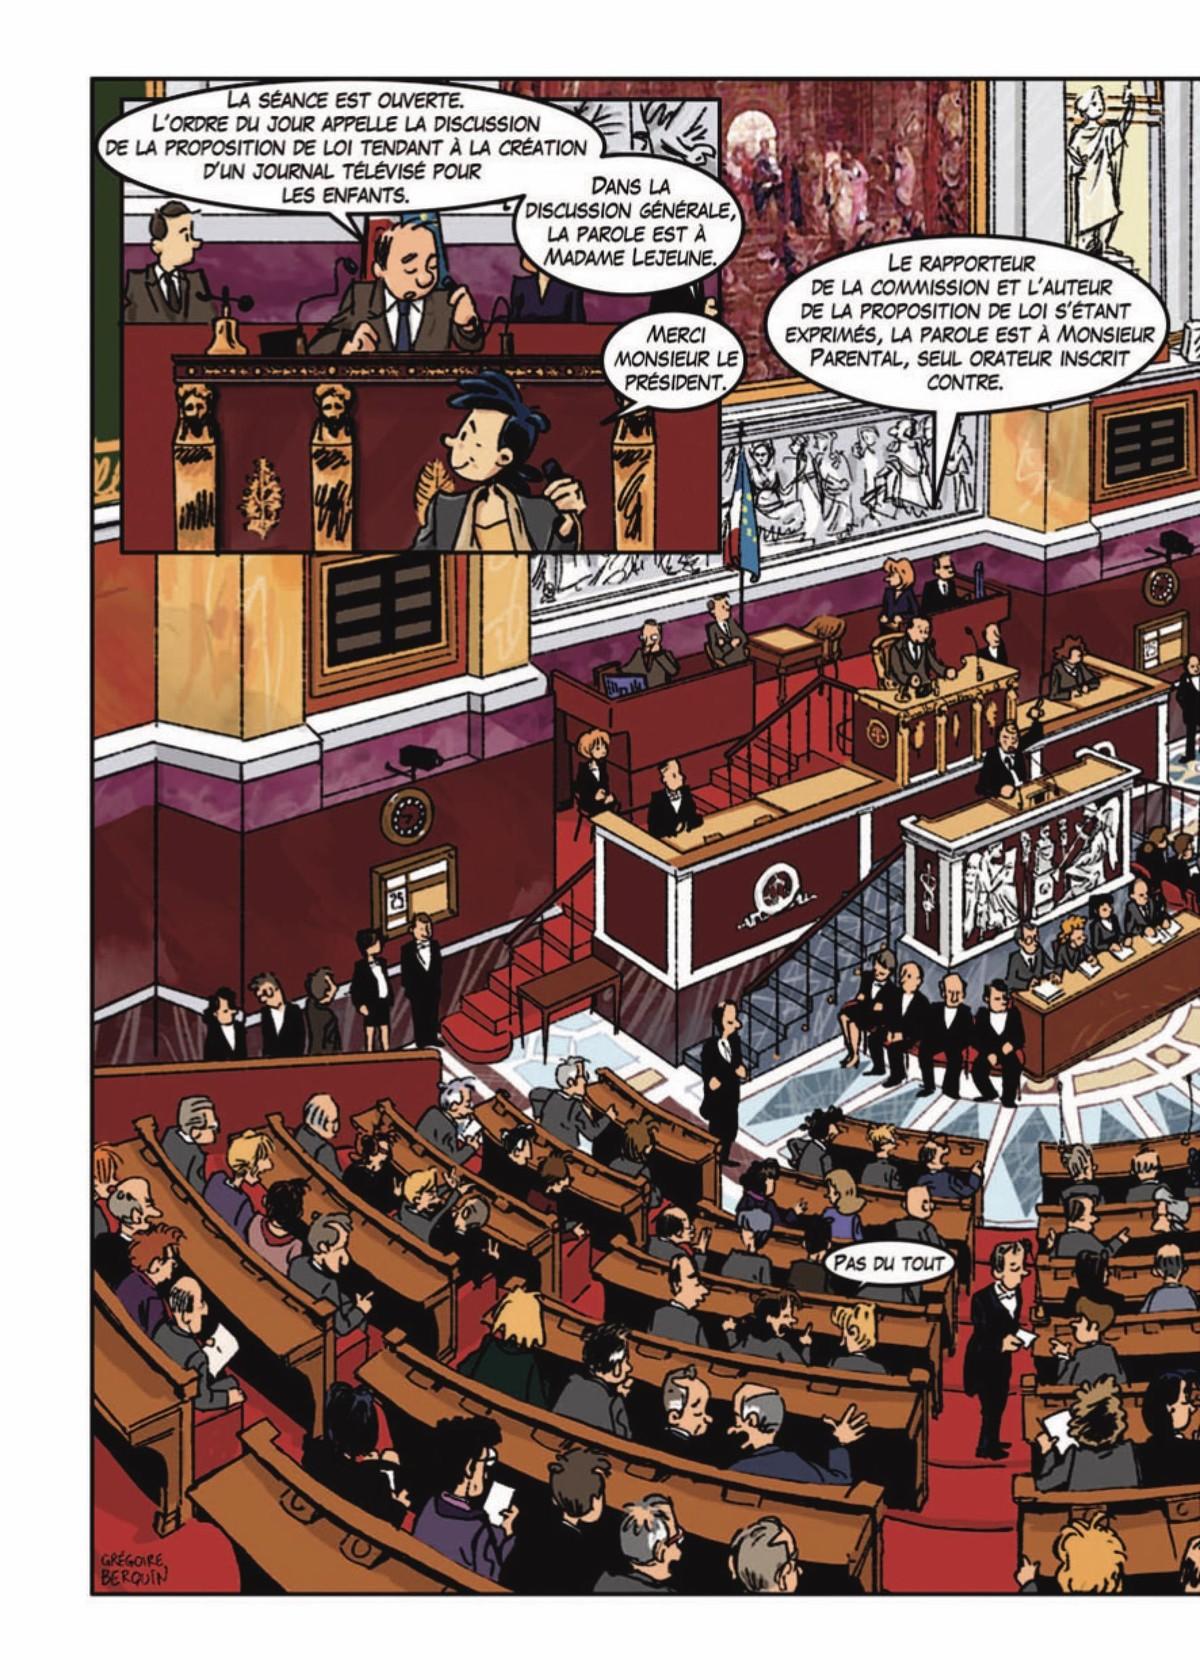 Bande dessinée de G. Berquin, À la découverte de l'Assemblée nationale, 2011